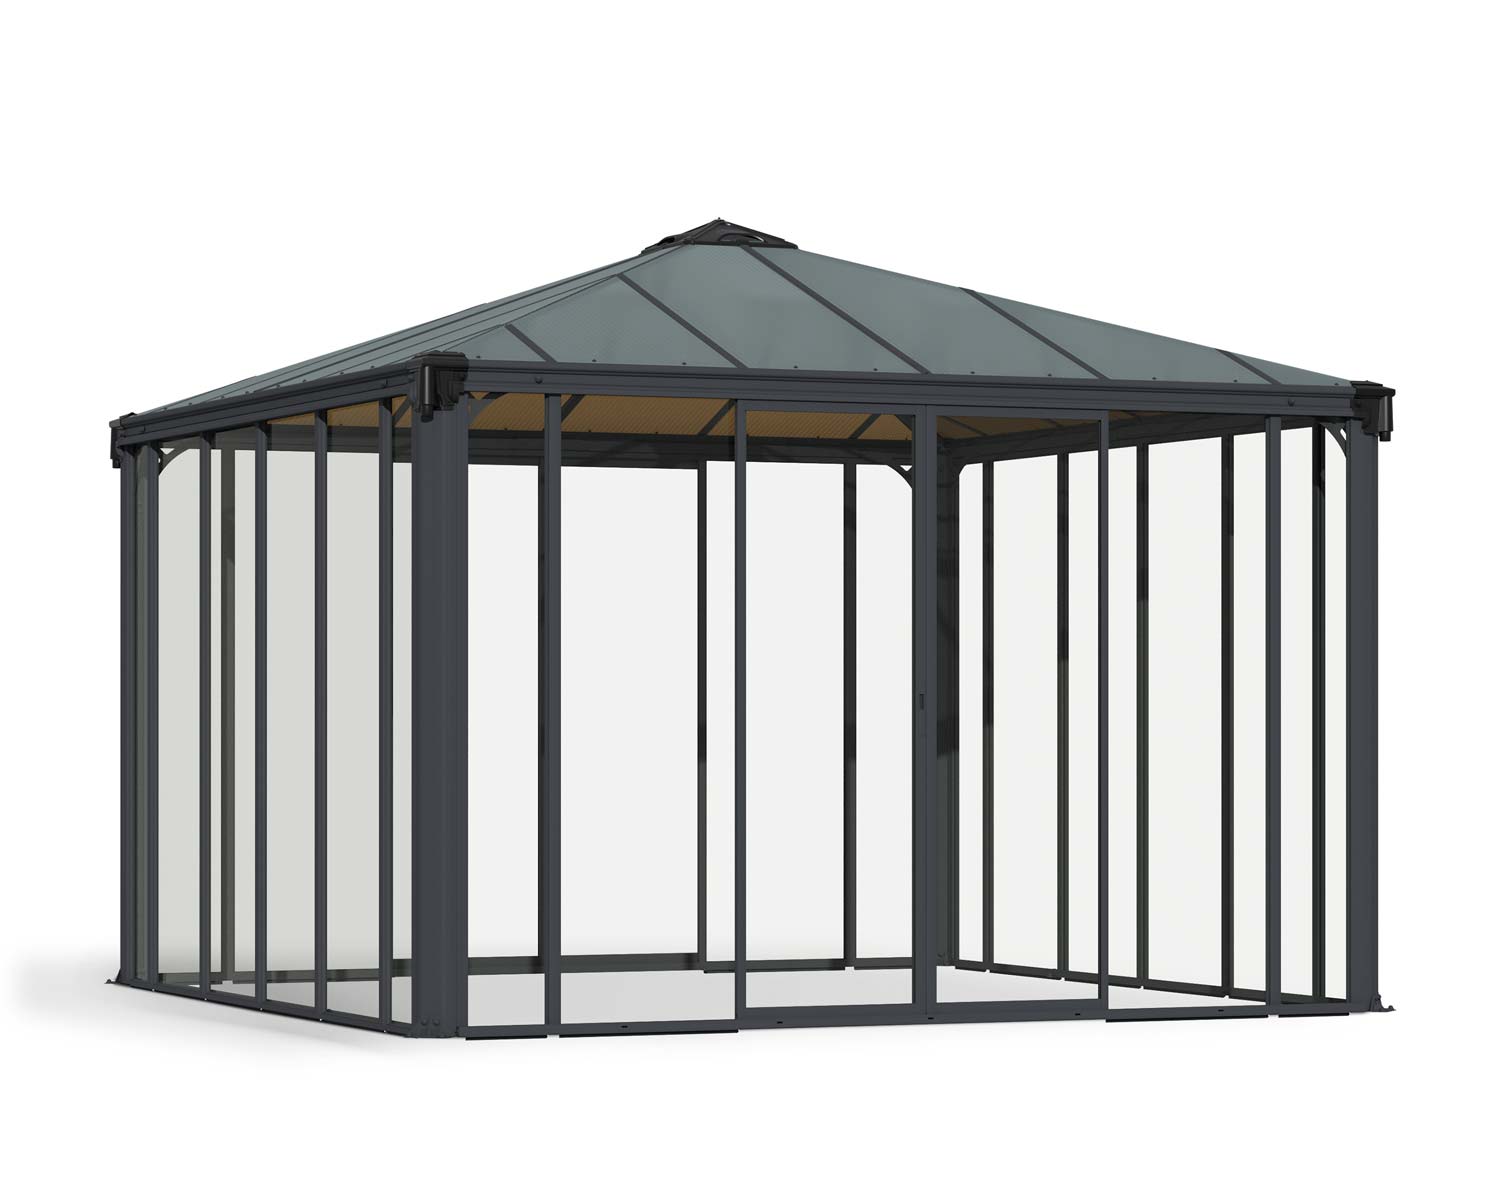 Enclosed Gazebo Kit Ledro 3600 12 ft. x 12 ft. Grey Structure & Hybrid Glazing